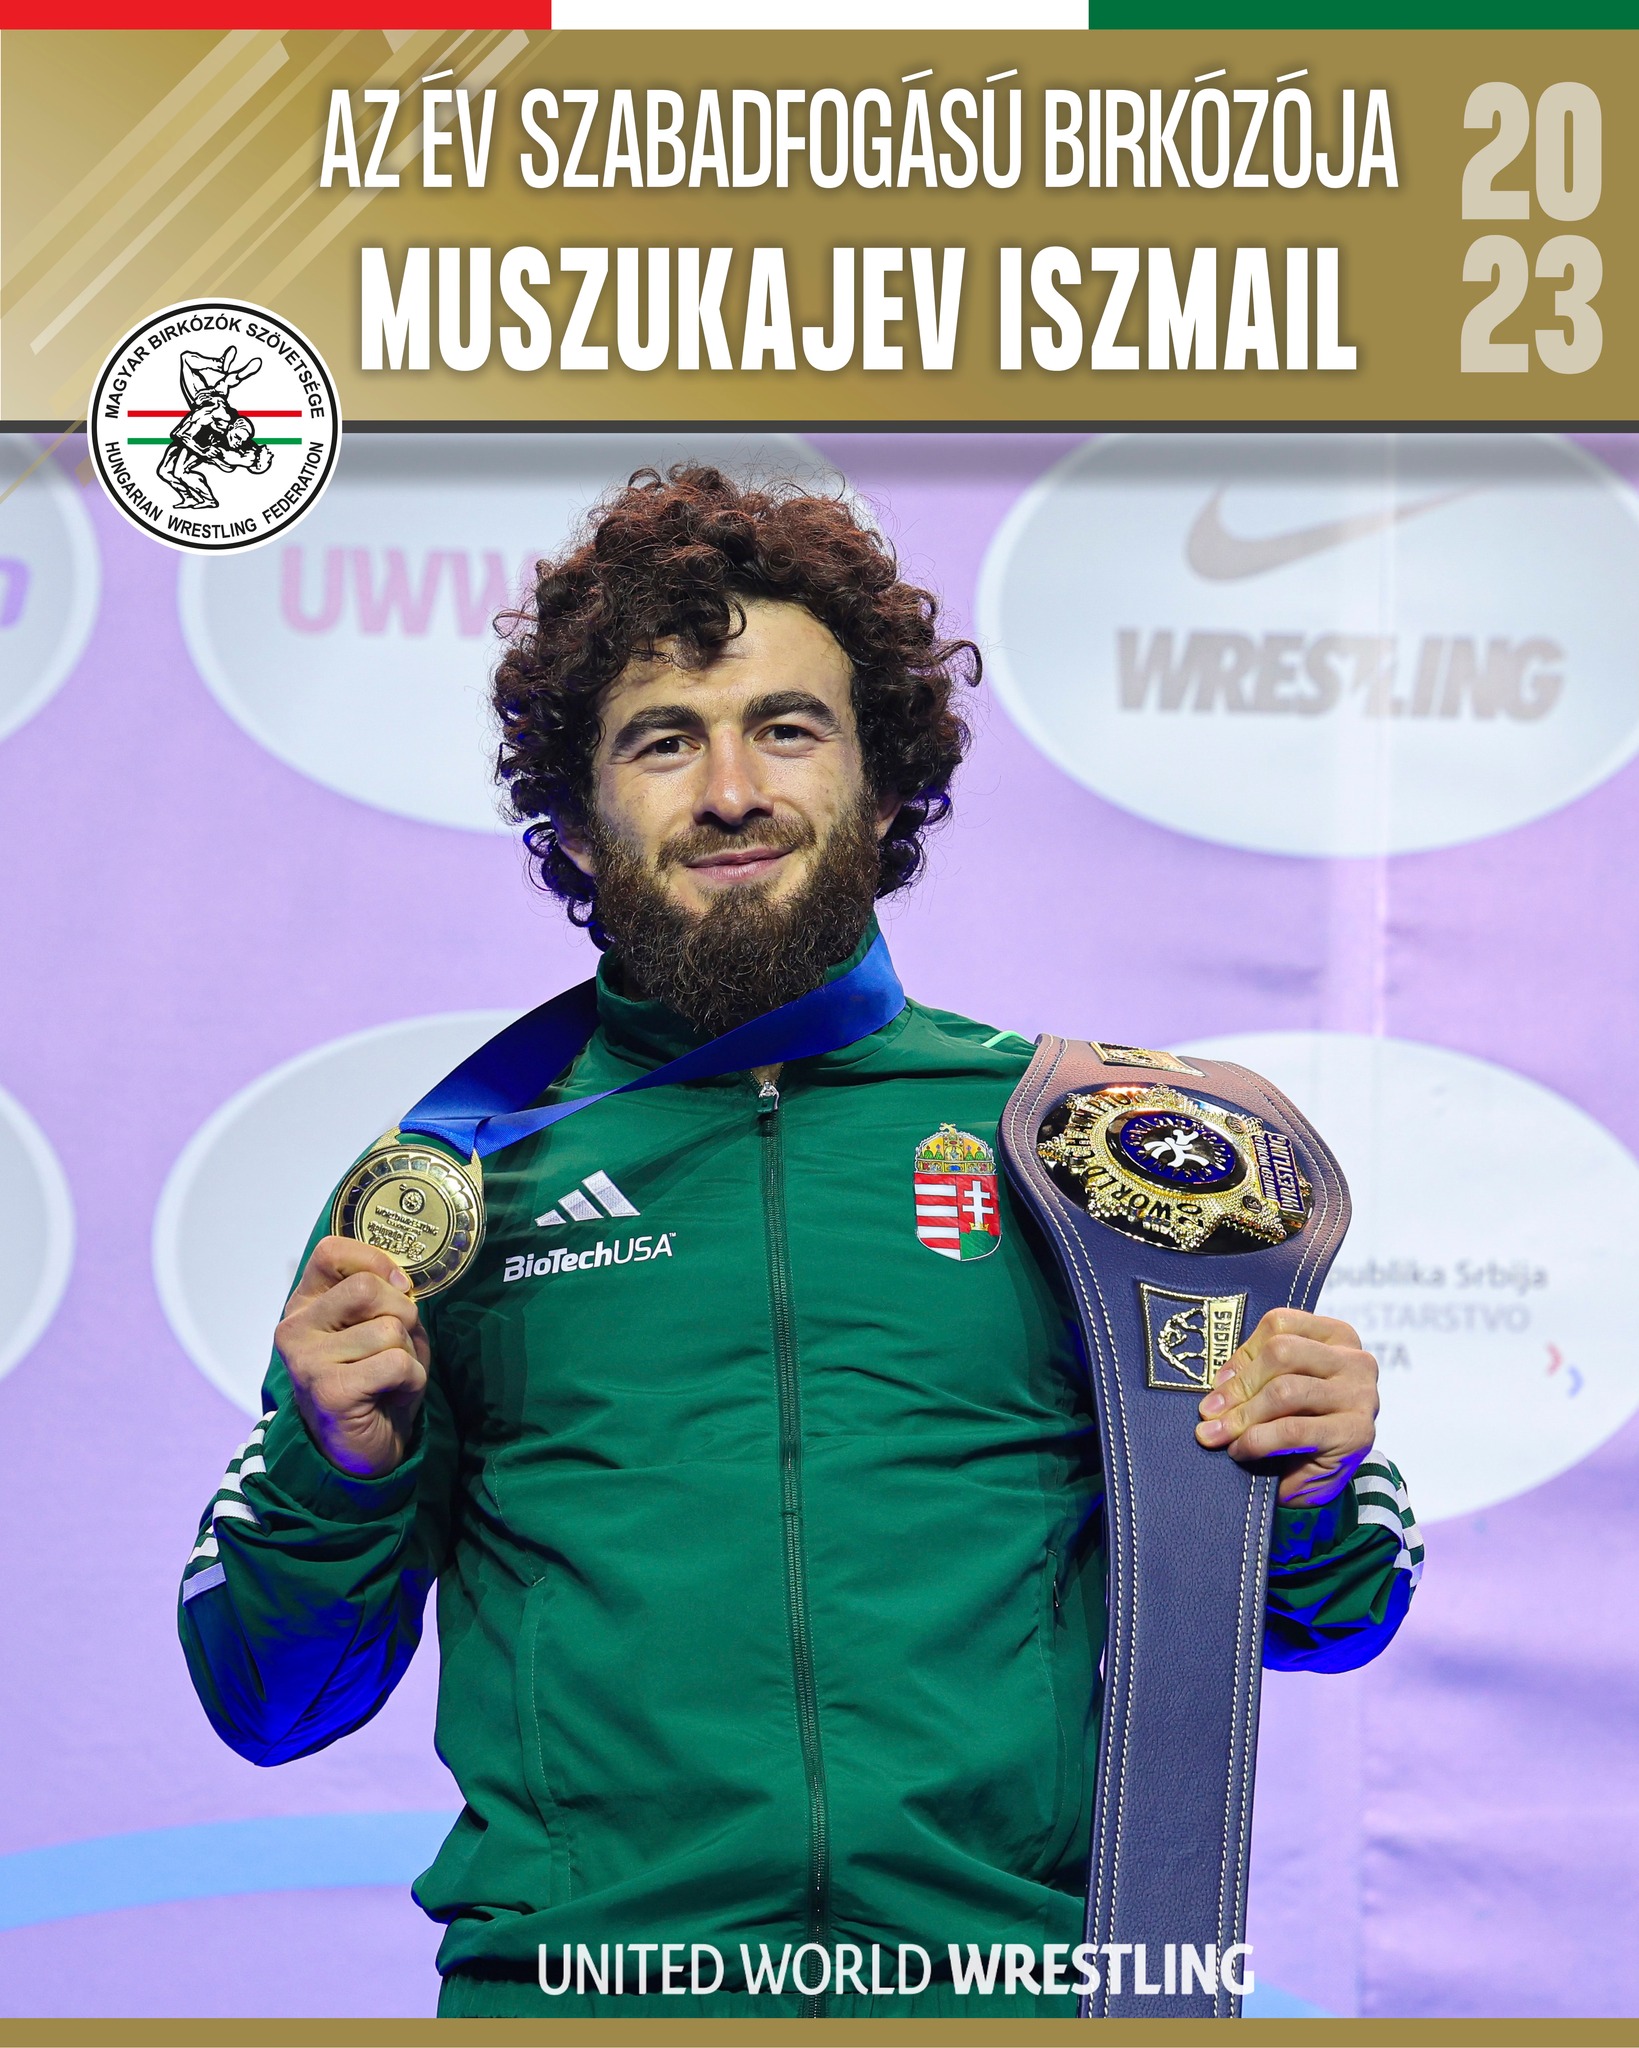 A magyar színekben versenyző Muszukajev Iszmail lett a világ legjobb szabadfogású birkózója